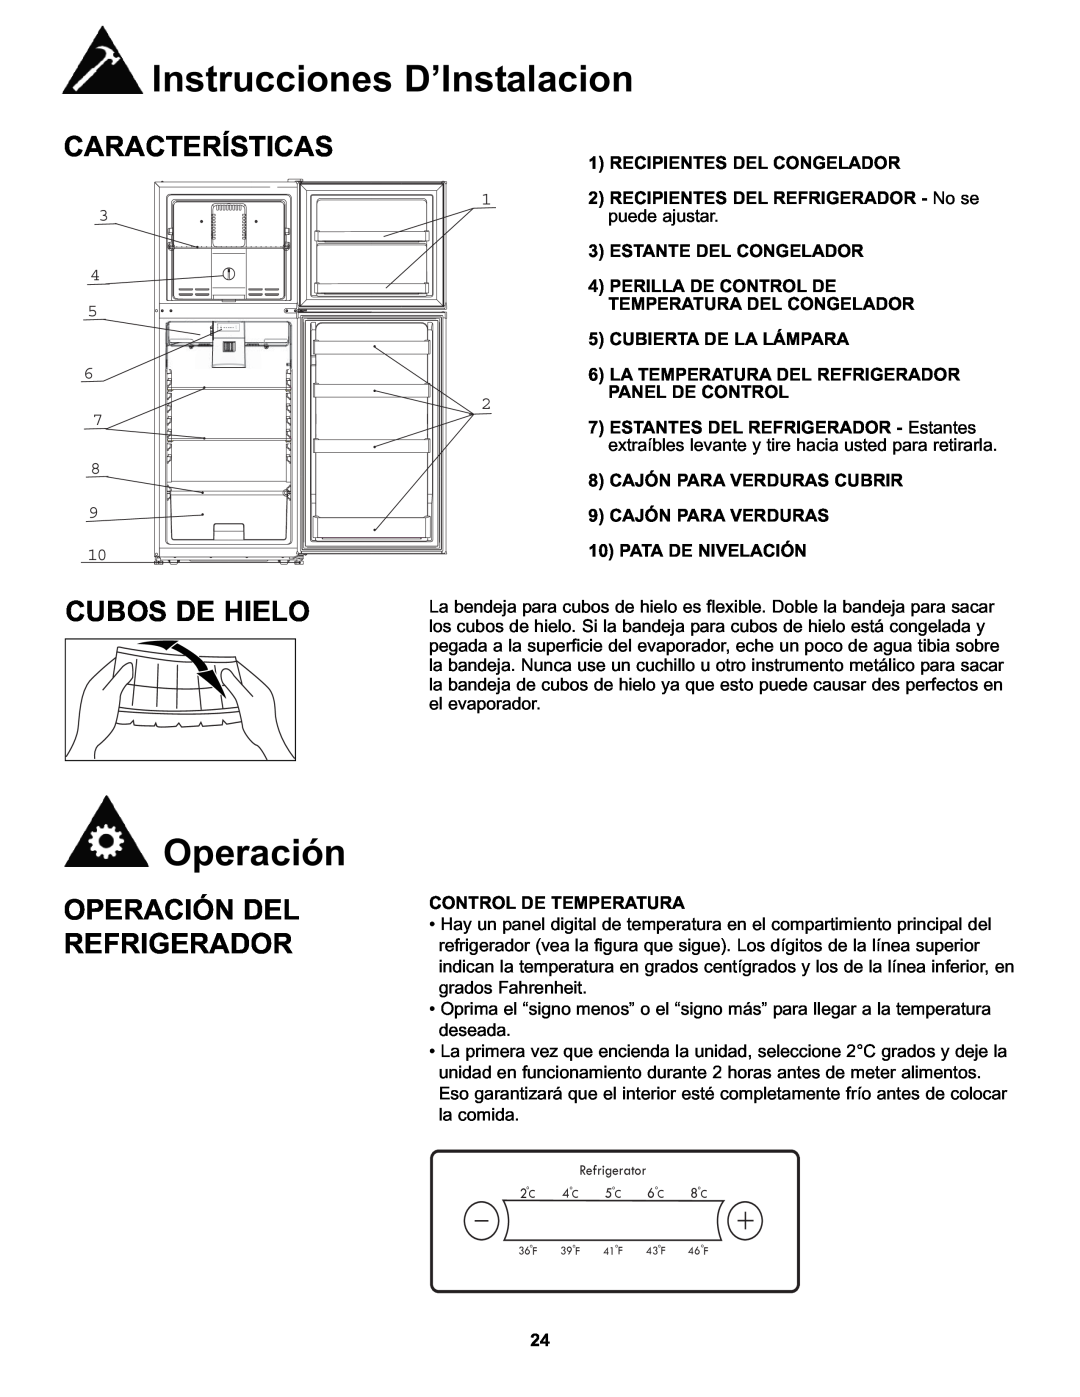 Danby DFF100A2WDB manual Características, Cubos De Hielo, Operación Del Refrigerador, Instrucciones D’Instalacion 